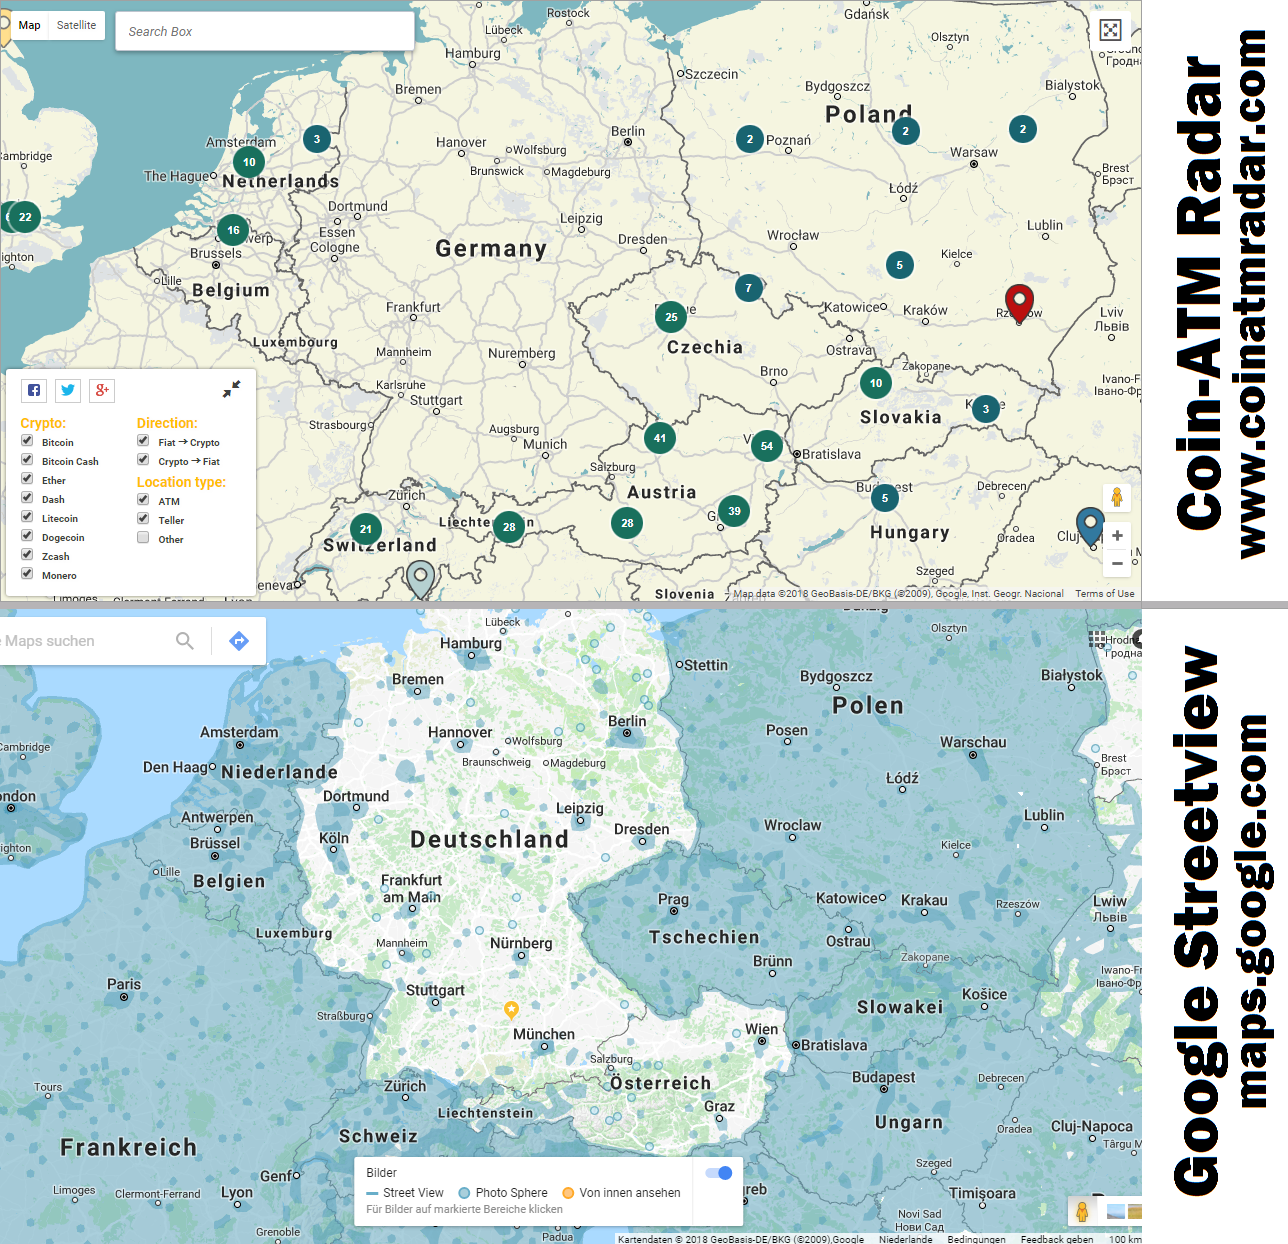 Deutschland im Vergleich: Bitcoin-ATM und Streetview